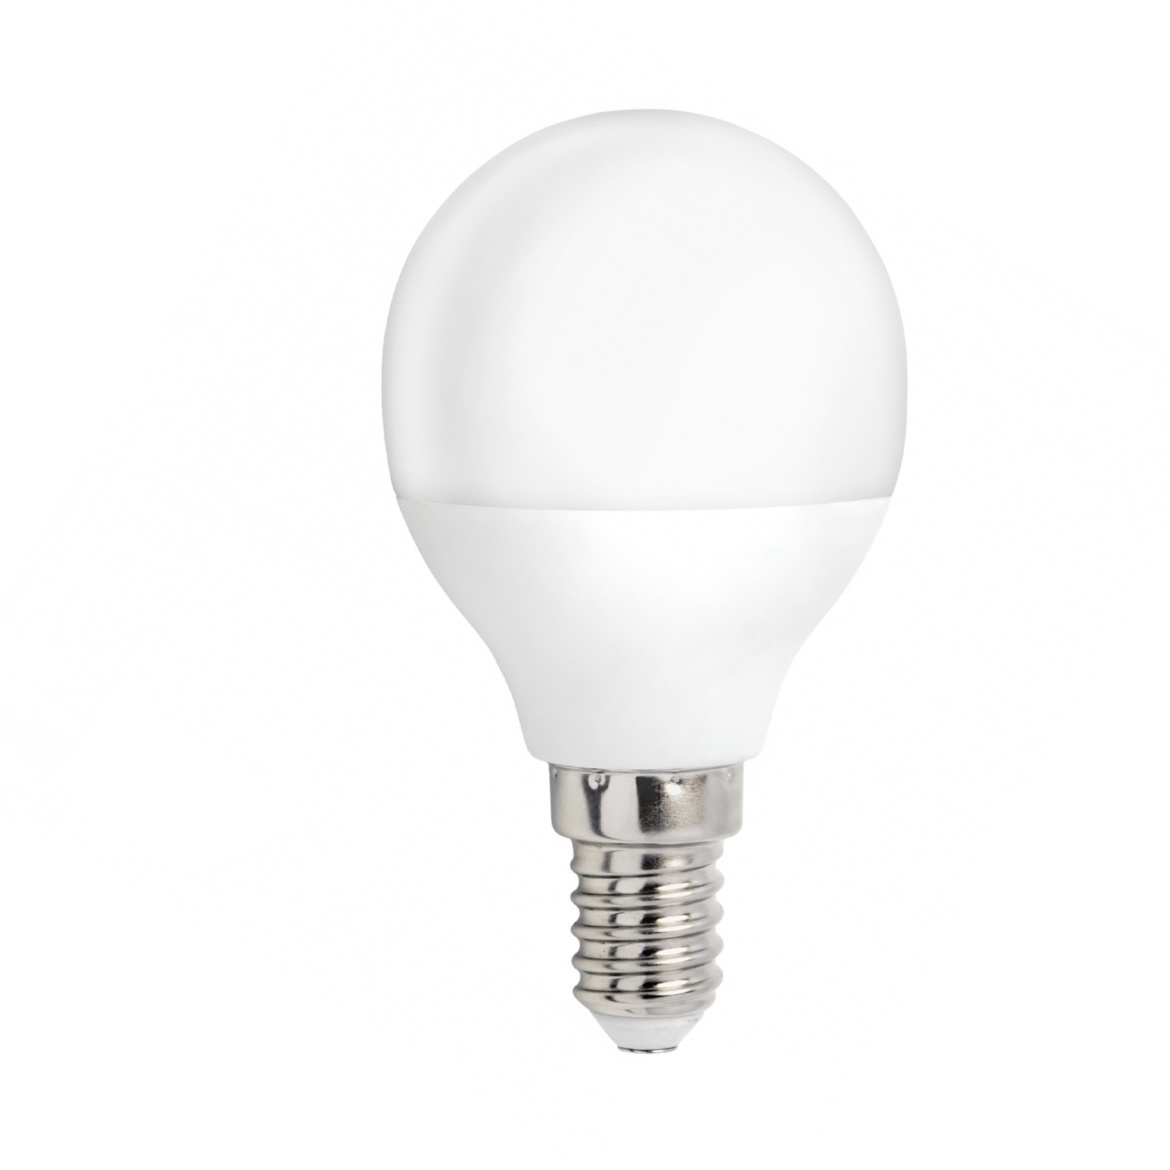 LED pære - E14-fatning - erstatter 10W - 6000K koldt hvidt lys Ledpaneler.dk